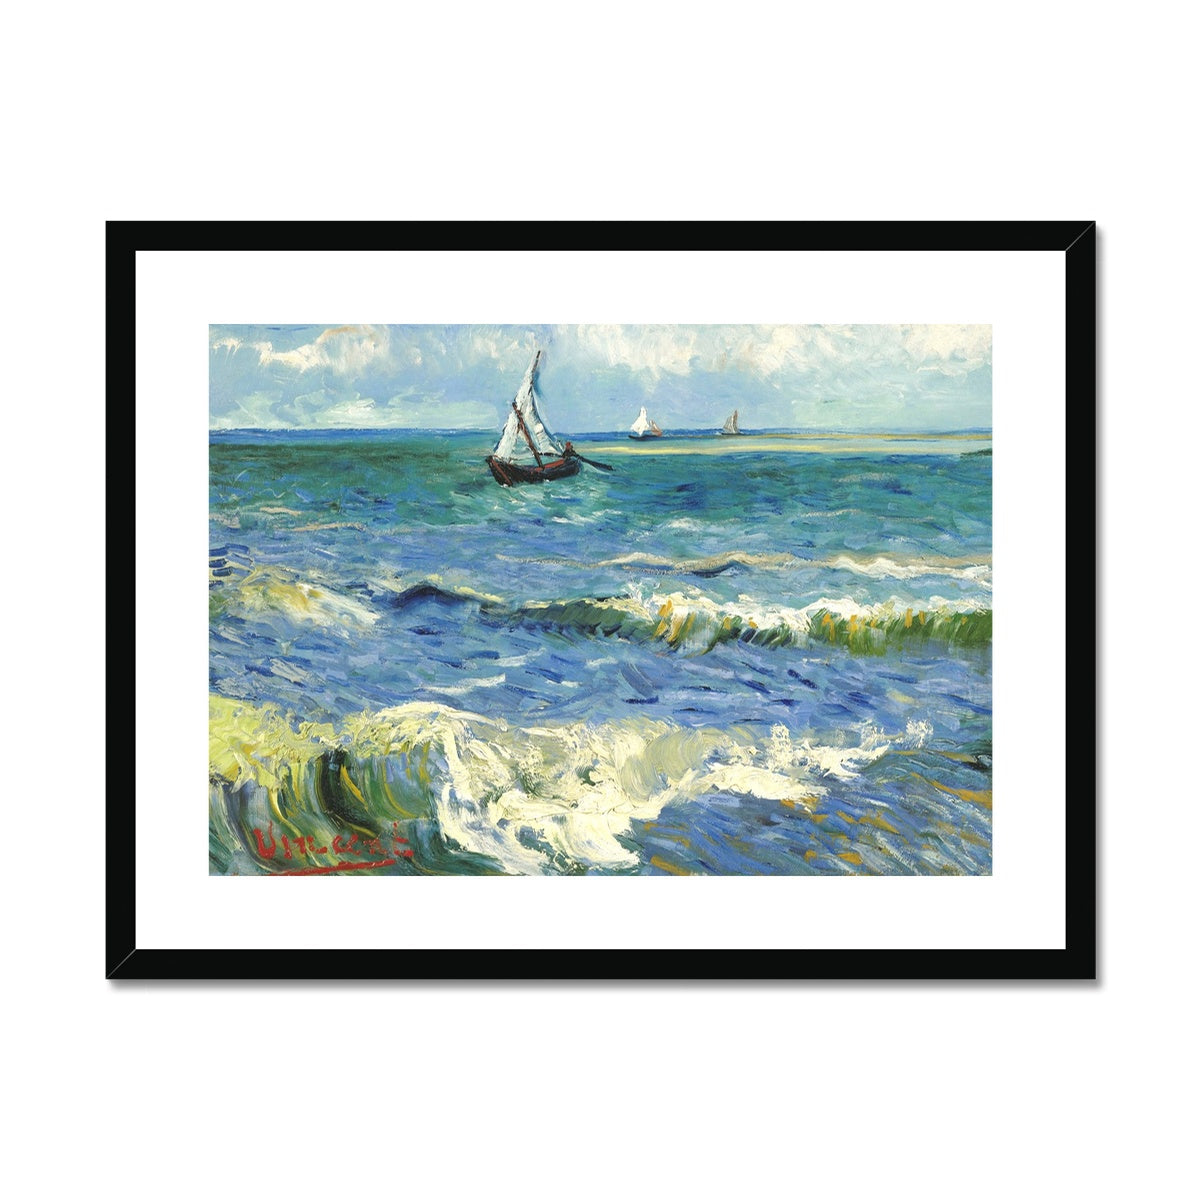 Vincent Van Gogh Framed Open Edition Art Print. 'Seascape near Les Saintes-Maries-de-la-Mer' Still-Life. Art Gallery Historic Art